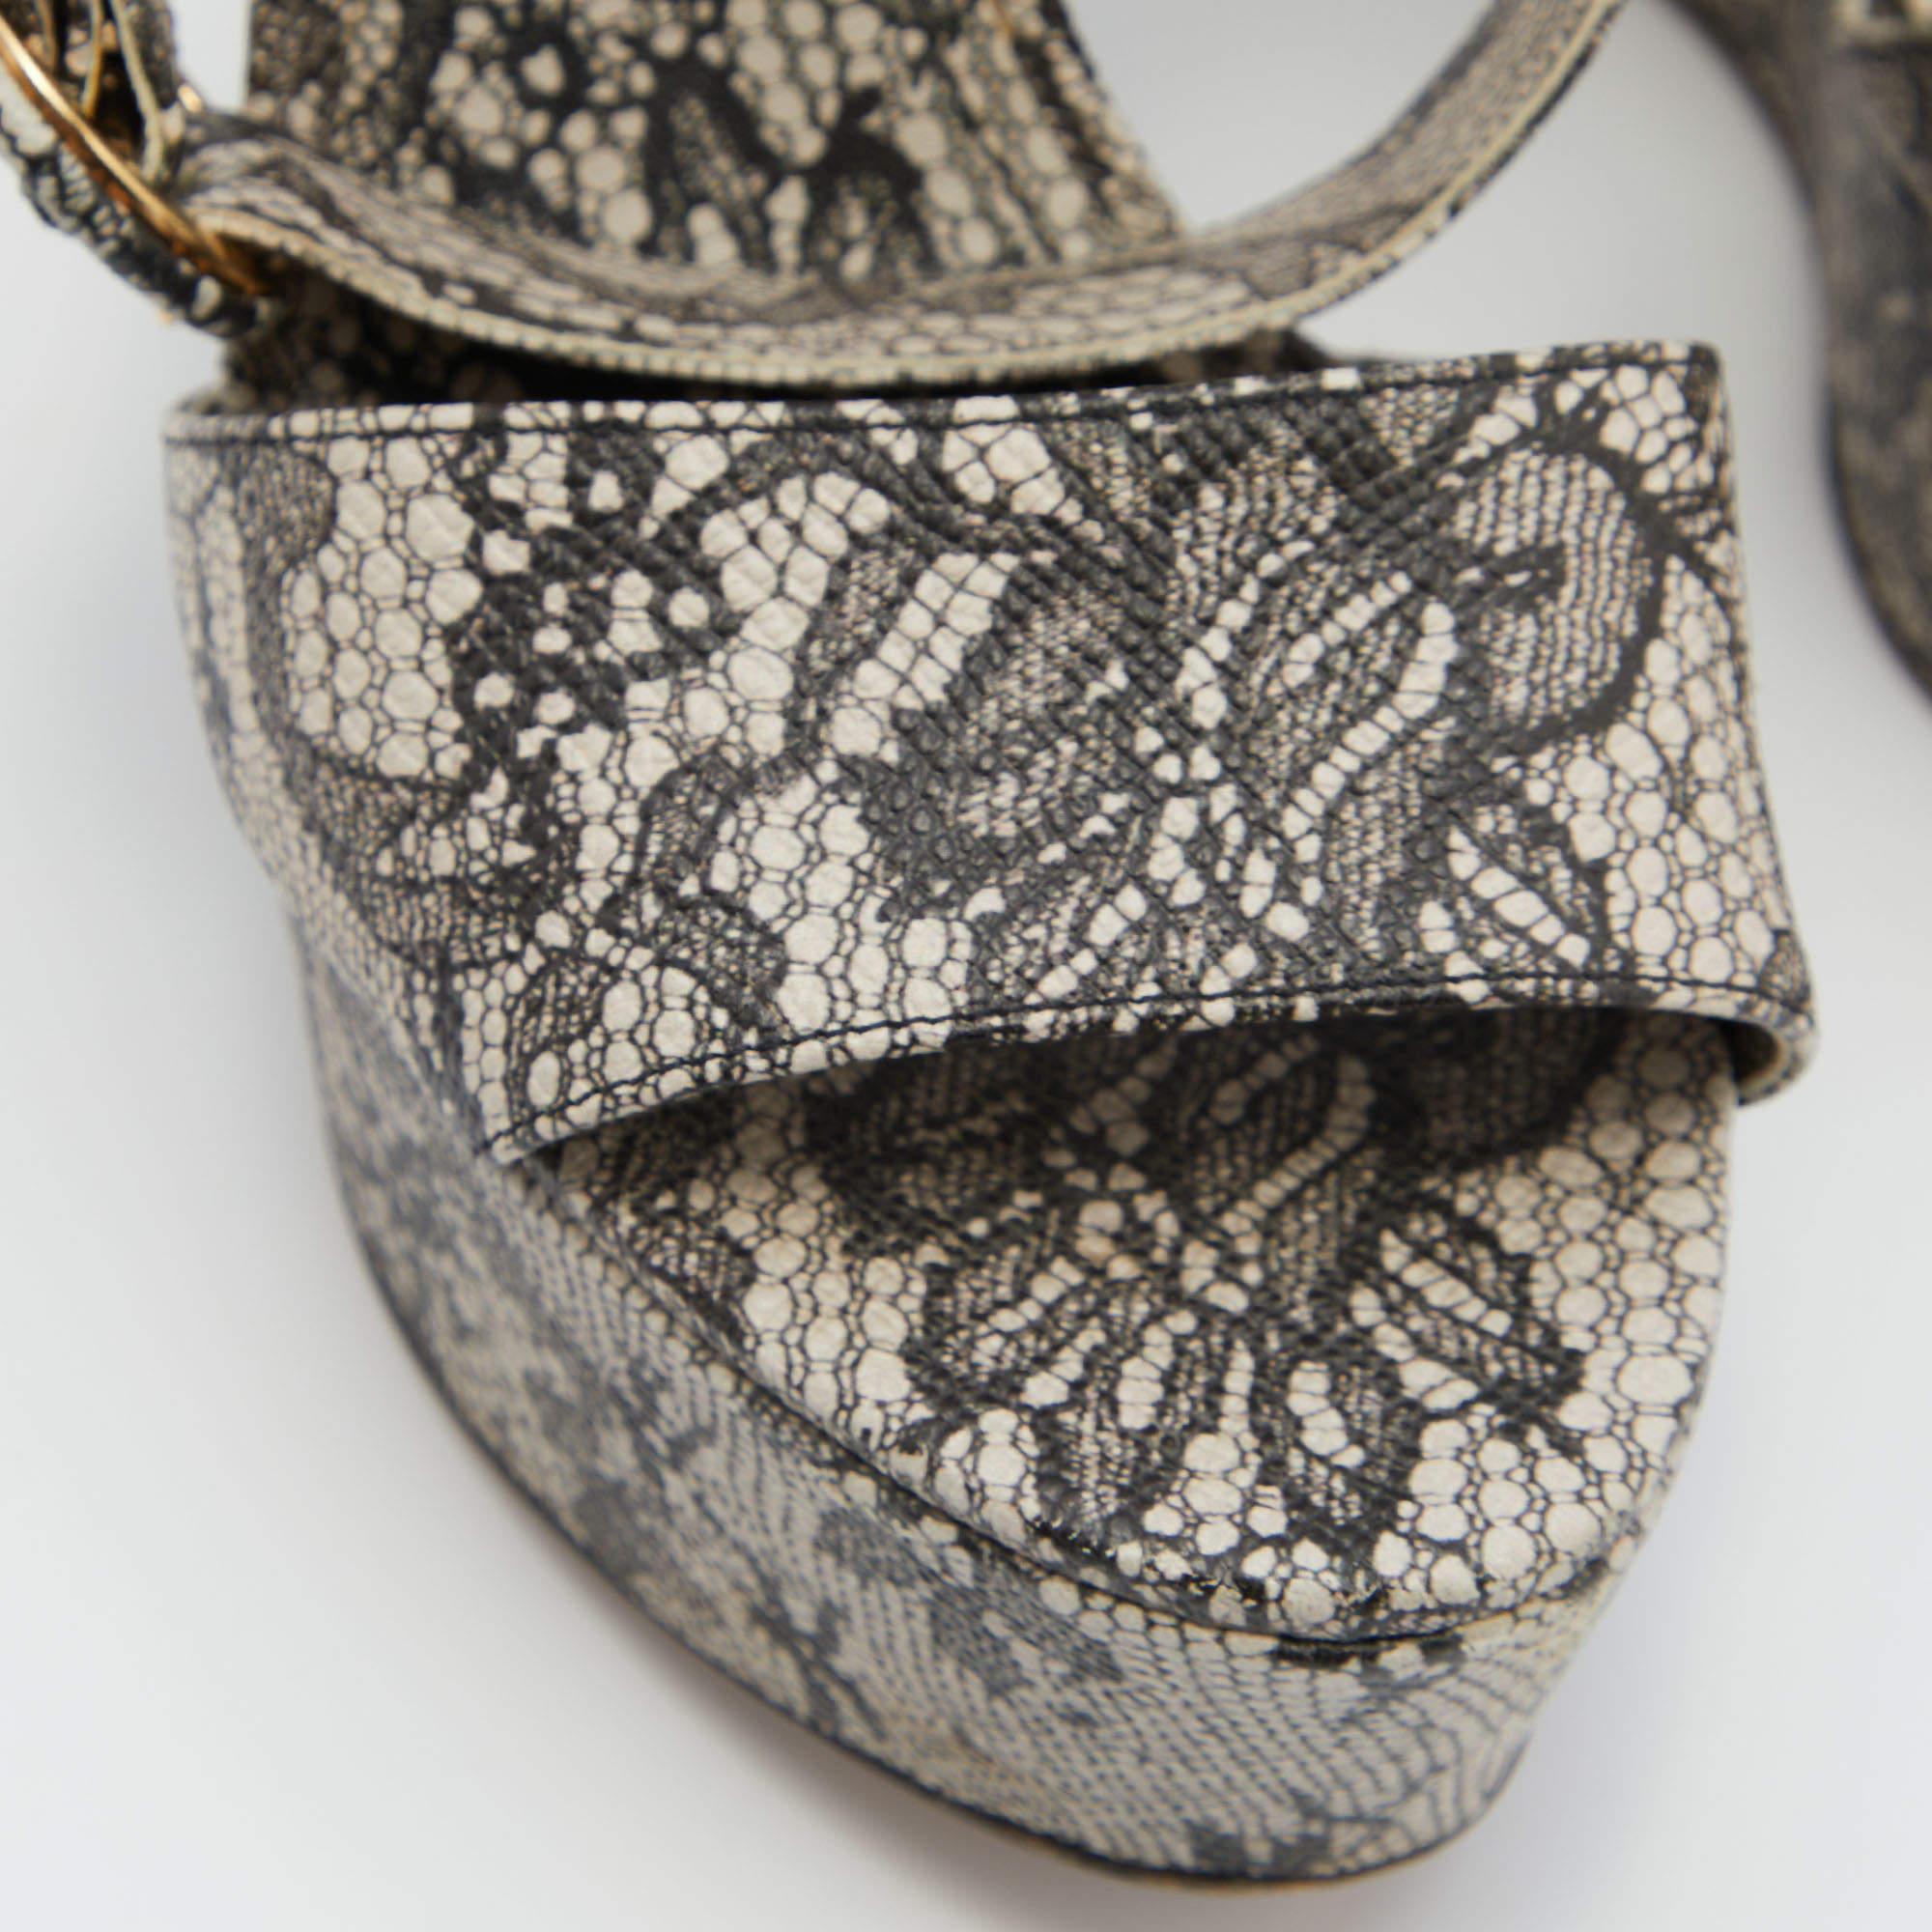 Diese Sandalen von Dolce & Gabbana fangen mit ihrer modernen Form die Eleganz einer Frau perfekt ein. Sie sind wunderschön aus Spitze gefertigt, haben einen auffälligen Druck und werden mit einer Schnalle am Knöchel geschlossen. Die Keilabsätze und